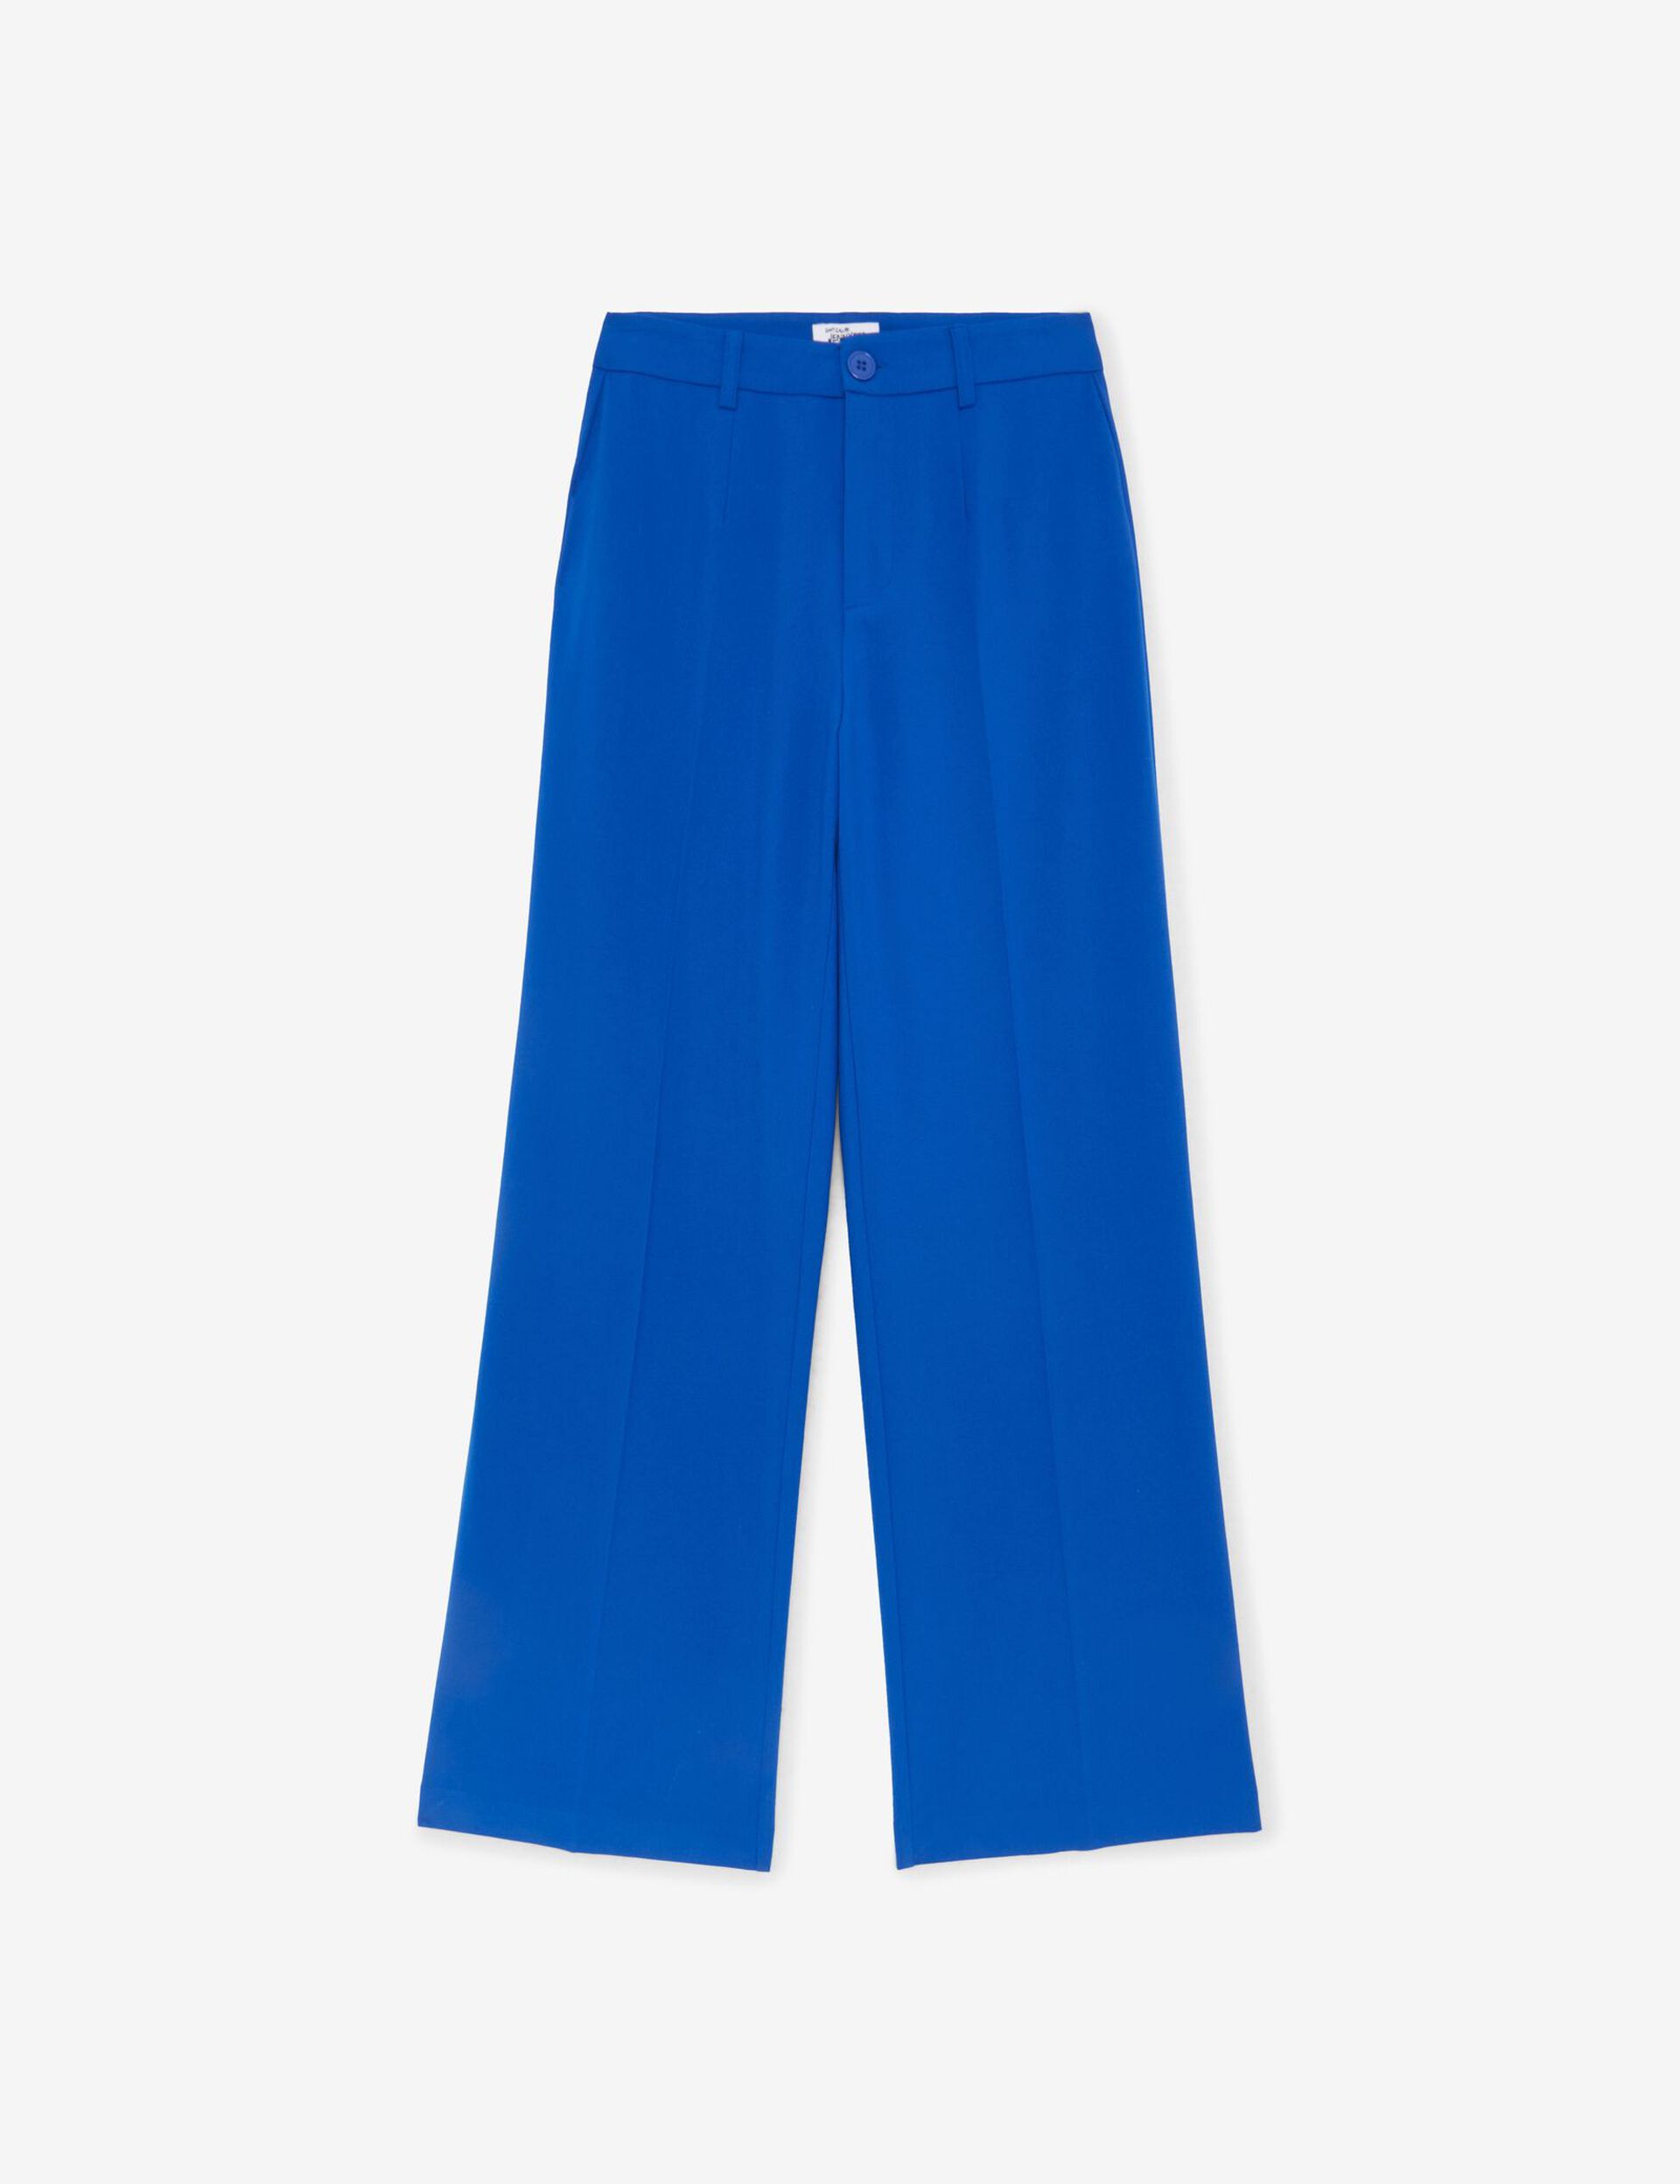 Pantalon tailleur bleu indigo